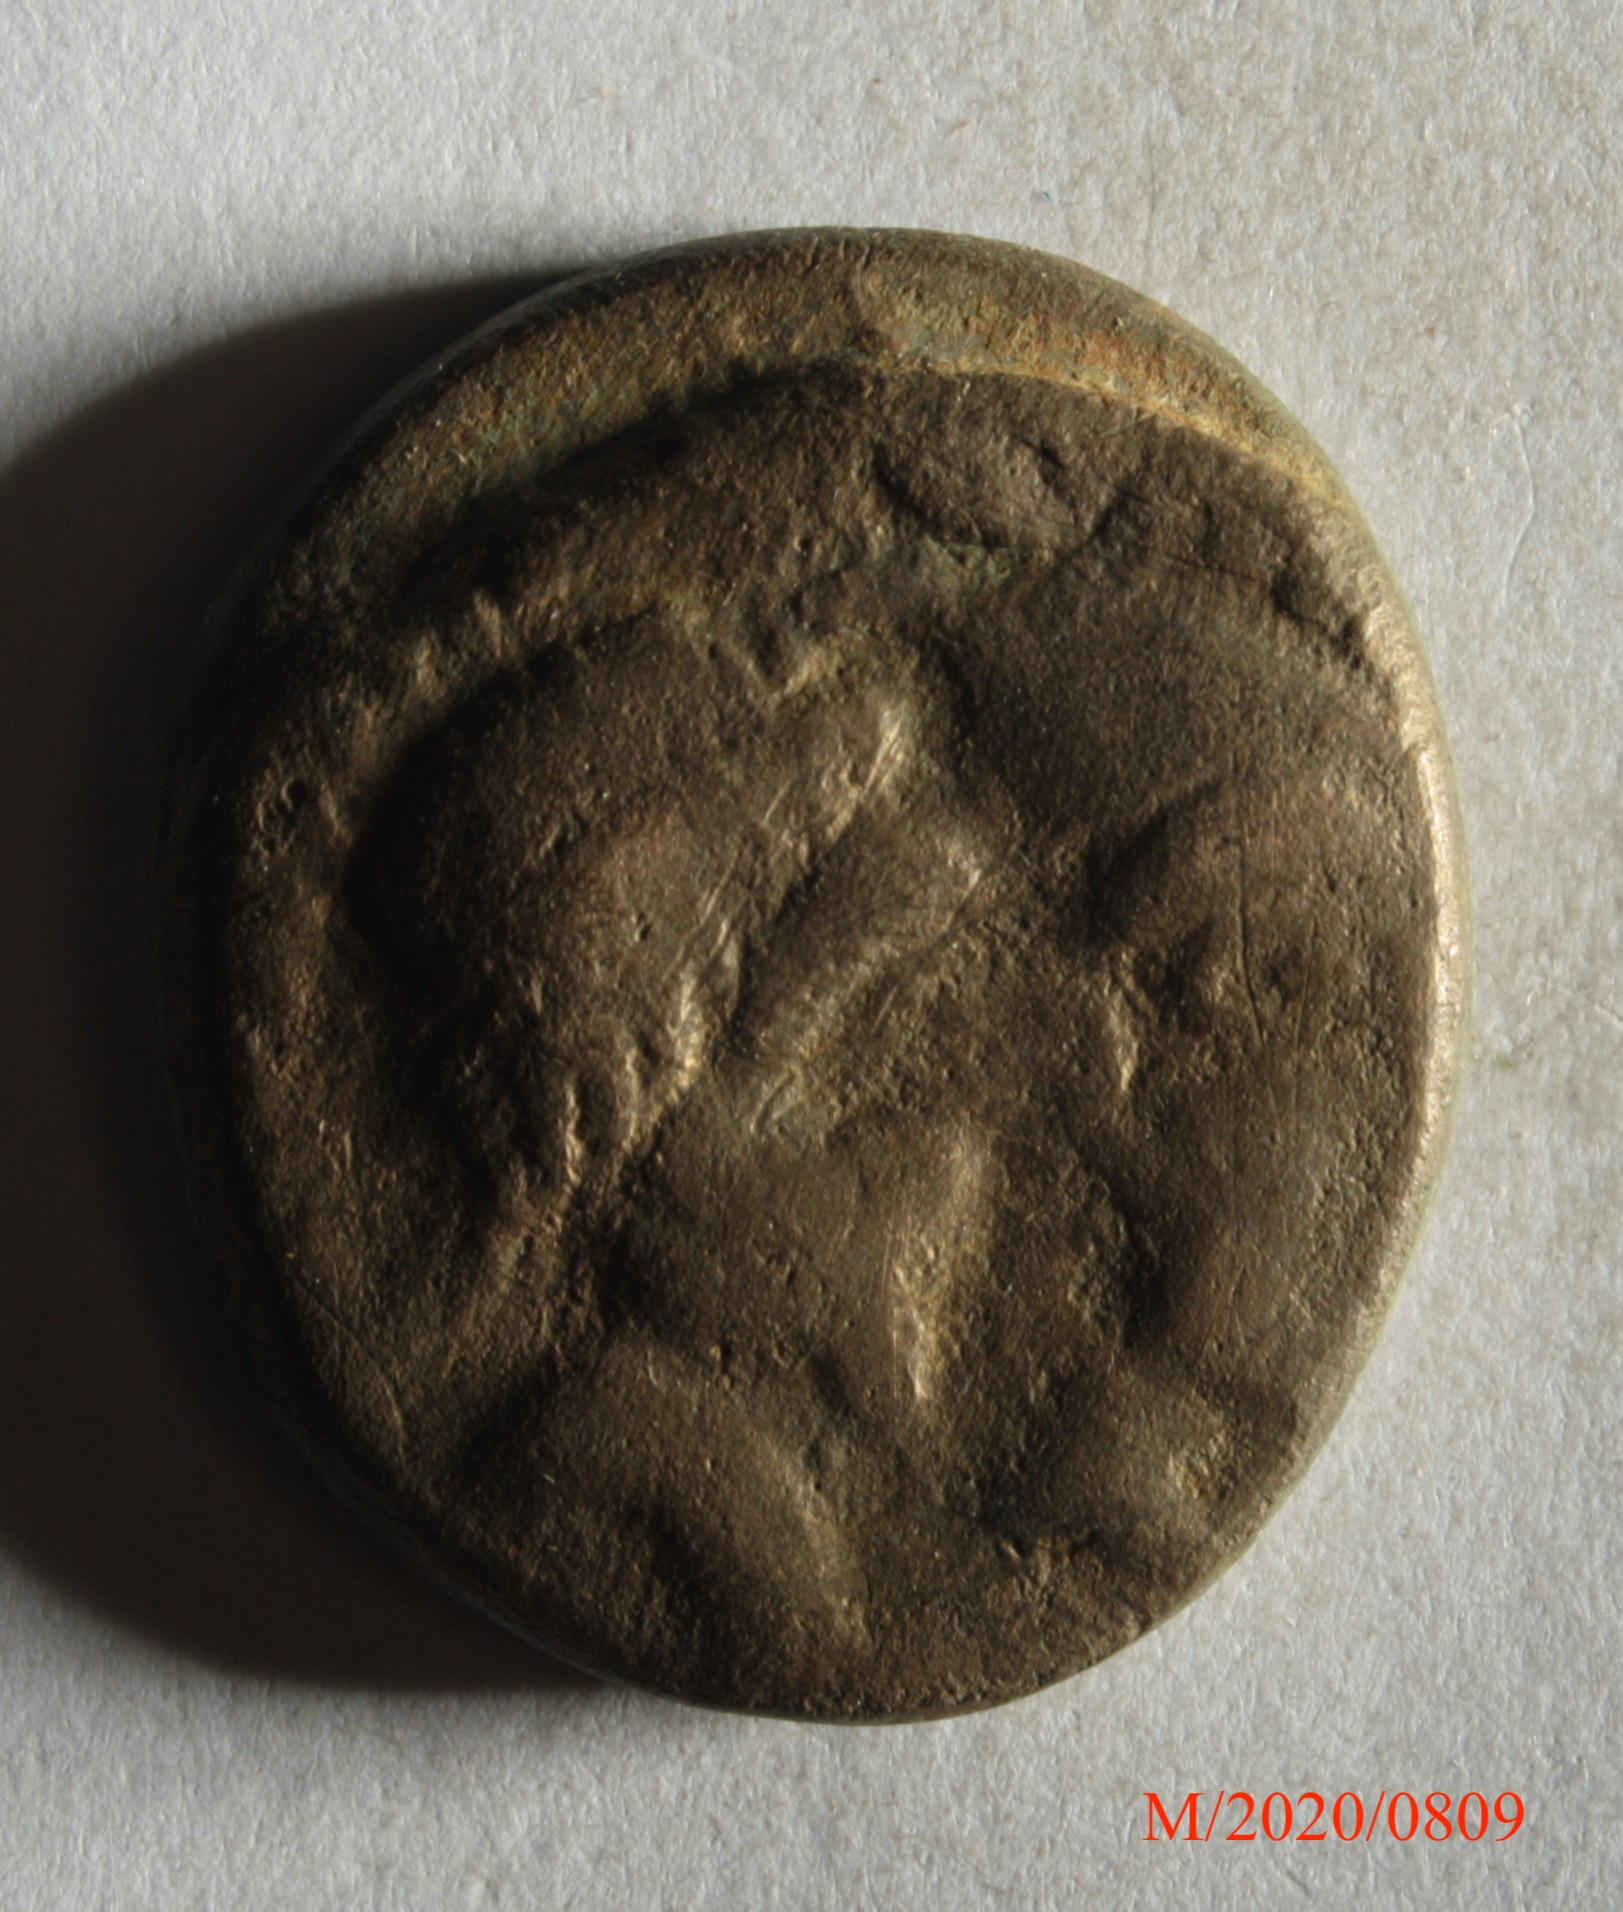 Römische Münze, Nominal Hexadrachme, Prägeherr unbekannt, Prägeort nicht bestimmbar, Fälschung (Museumsgesellschaft Bad Dürkheim e.V. CC BY-NC-SA)